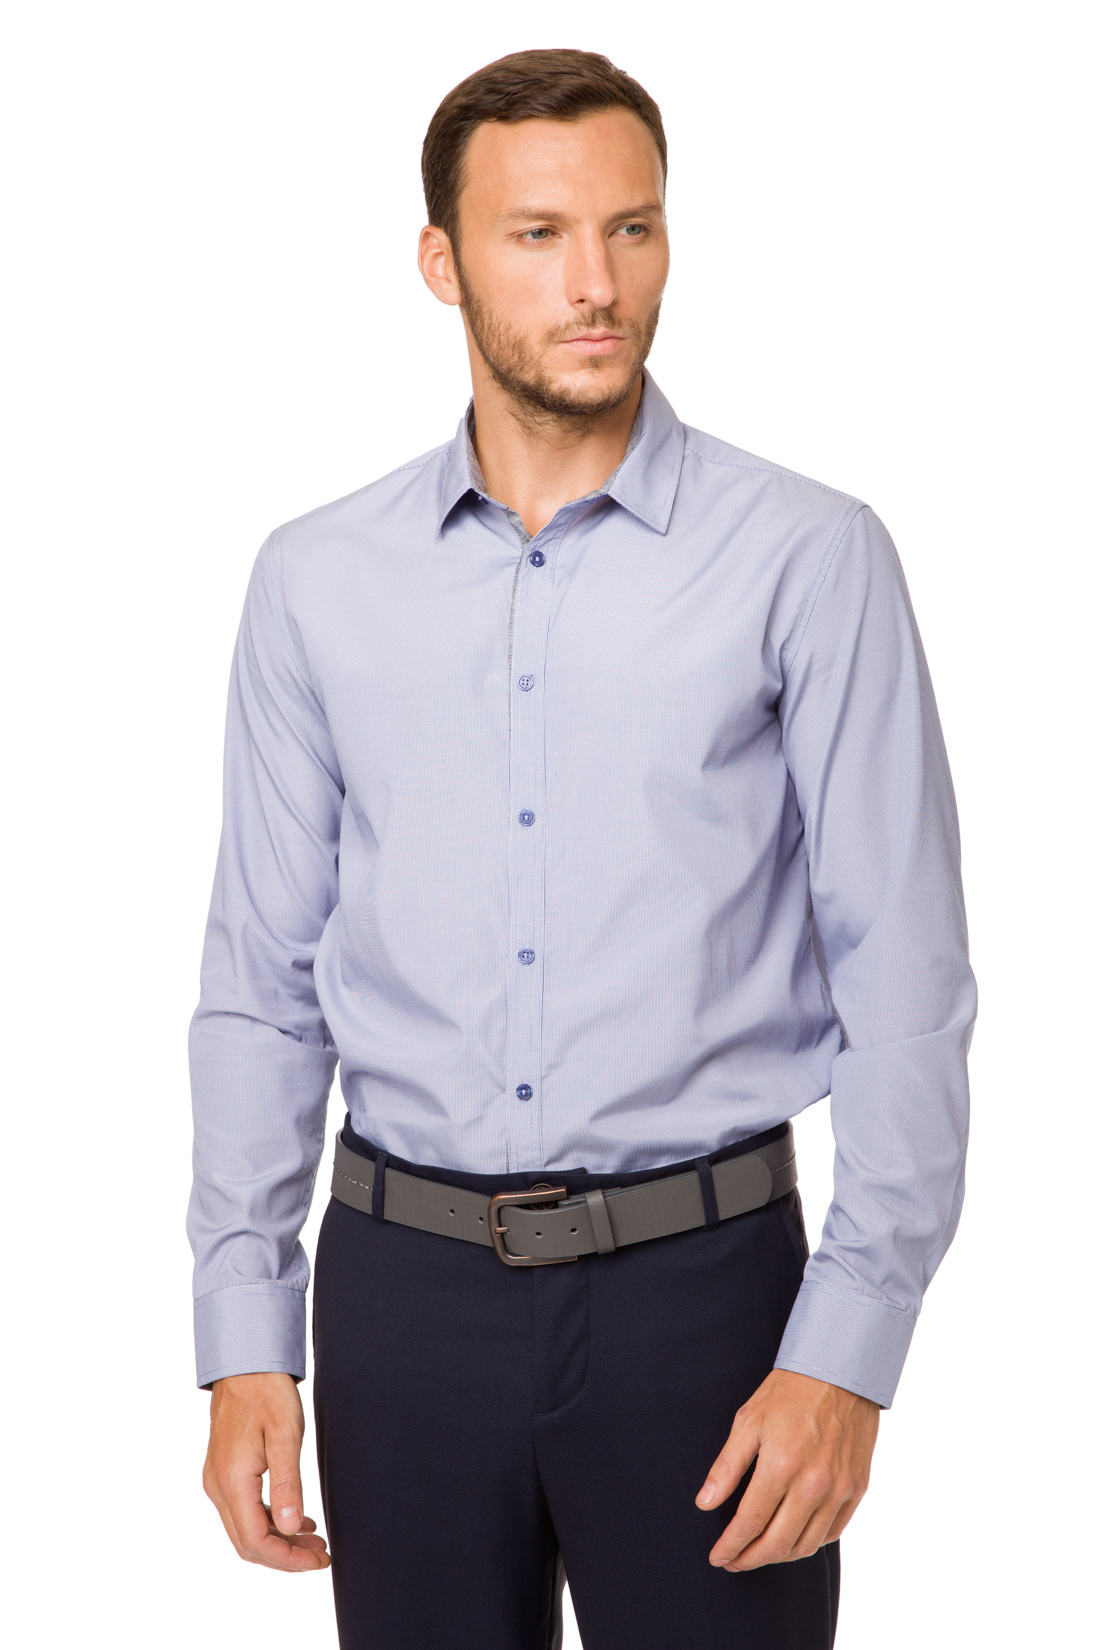 Классическая рубашка в полоску (арт. baon B667002), размер S, цвет синий